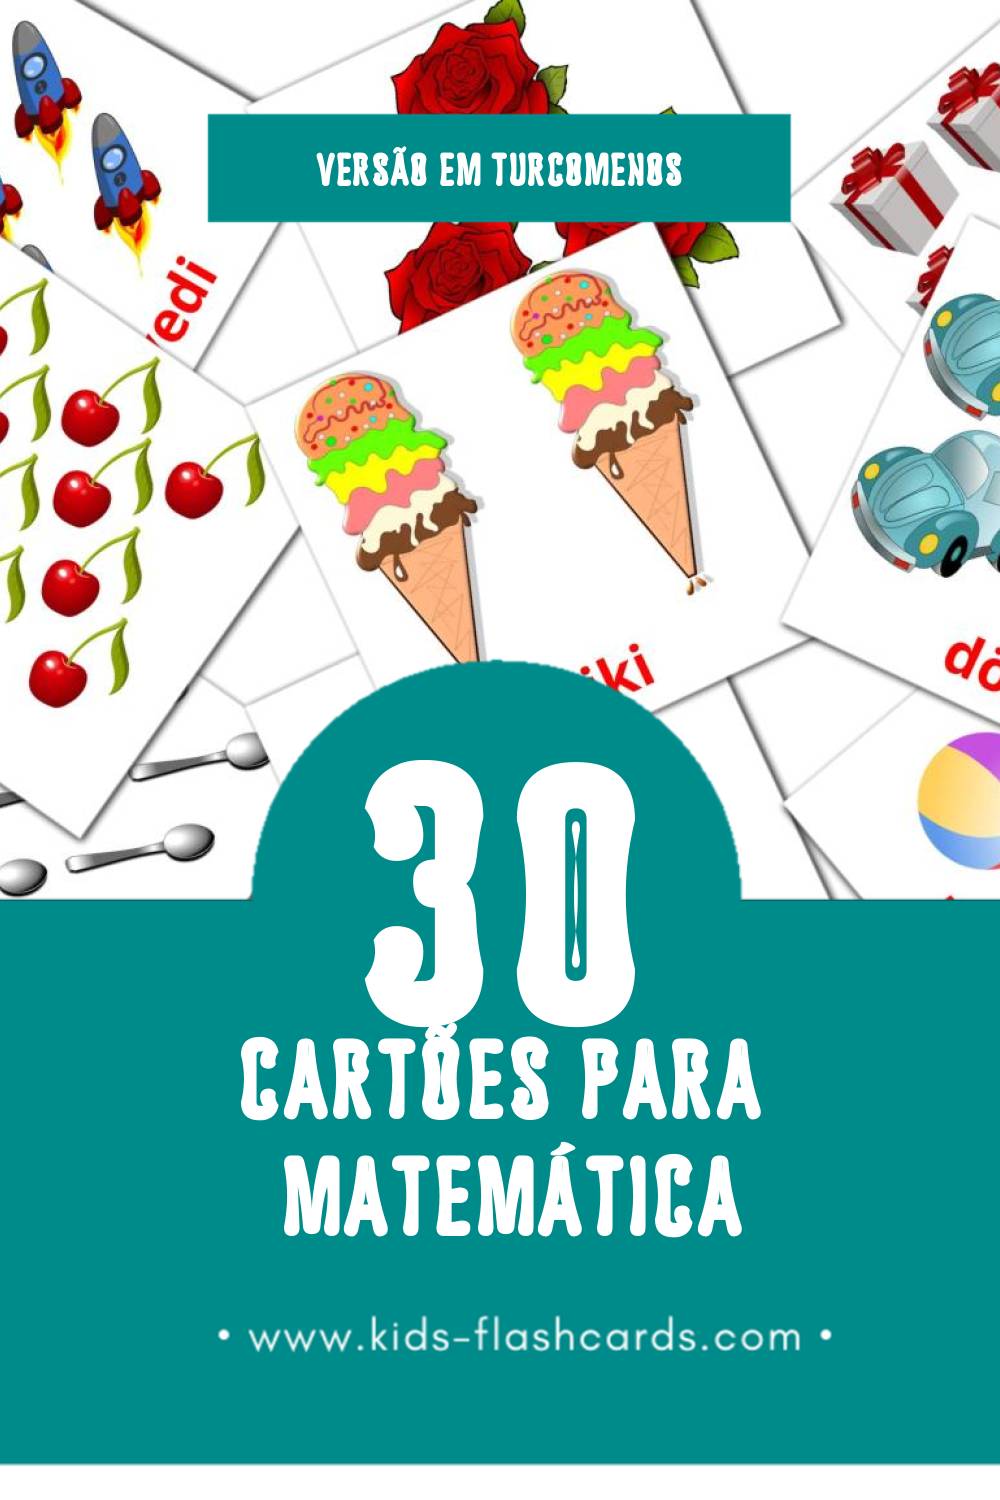 Flashcards de Matematika Visuais para Toddlers (10 cartões em Turcomenos)